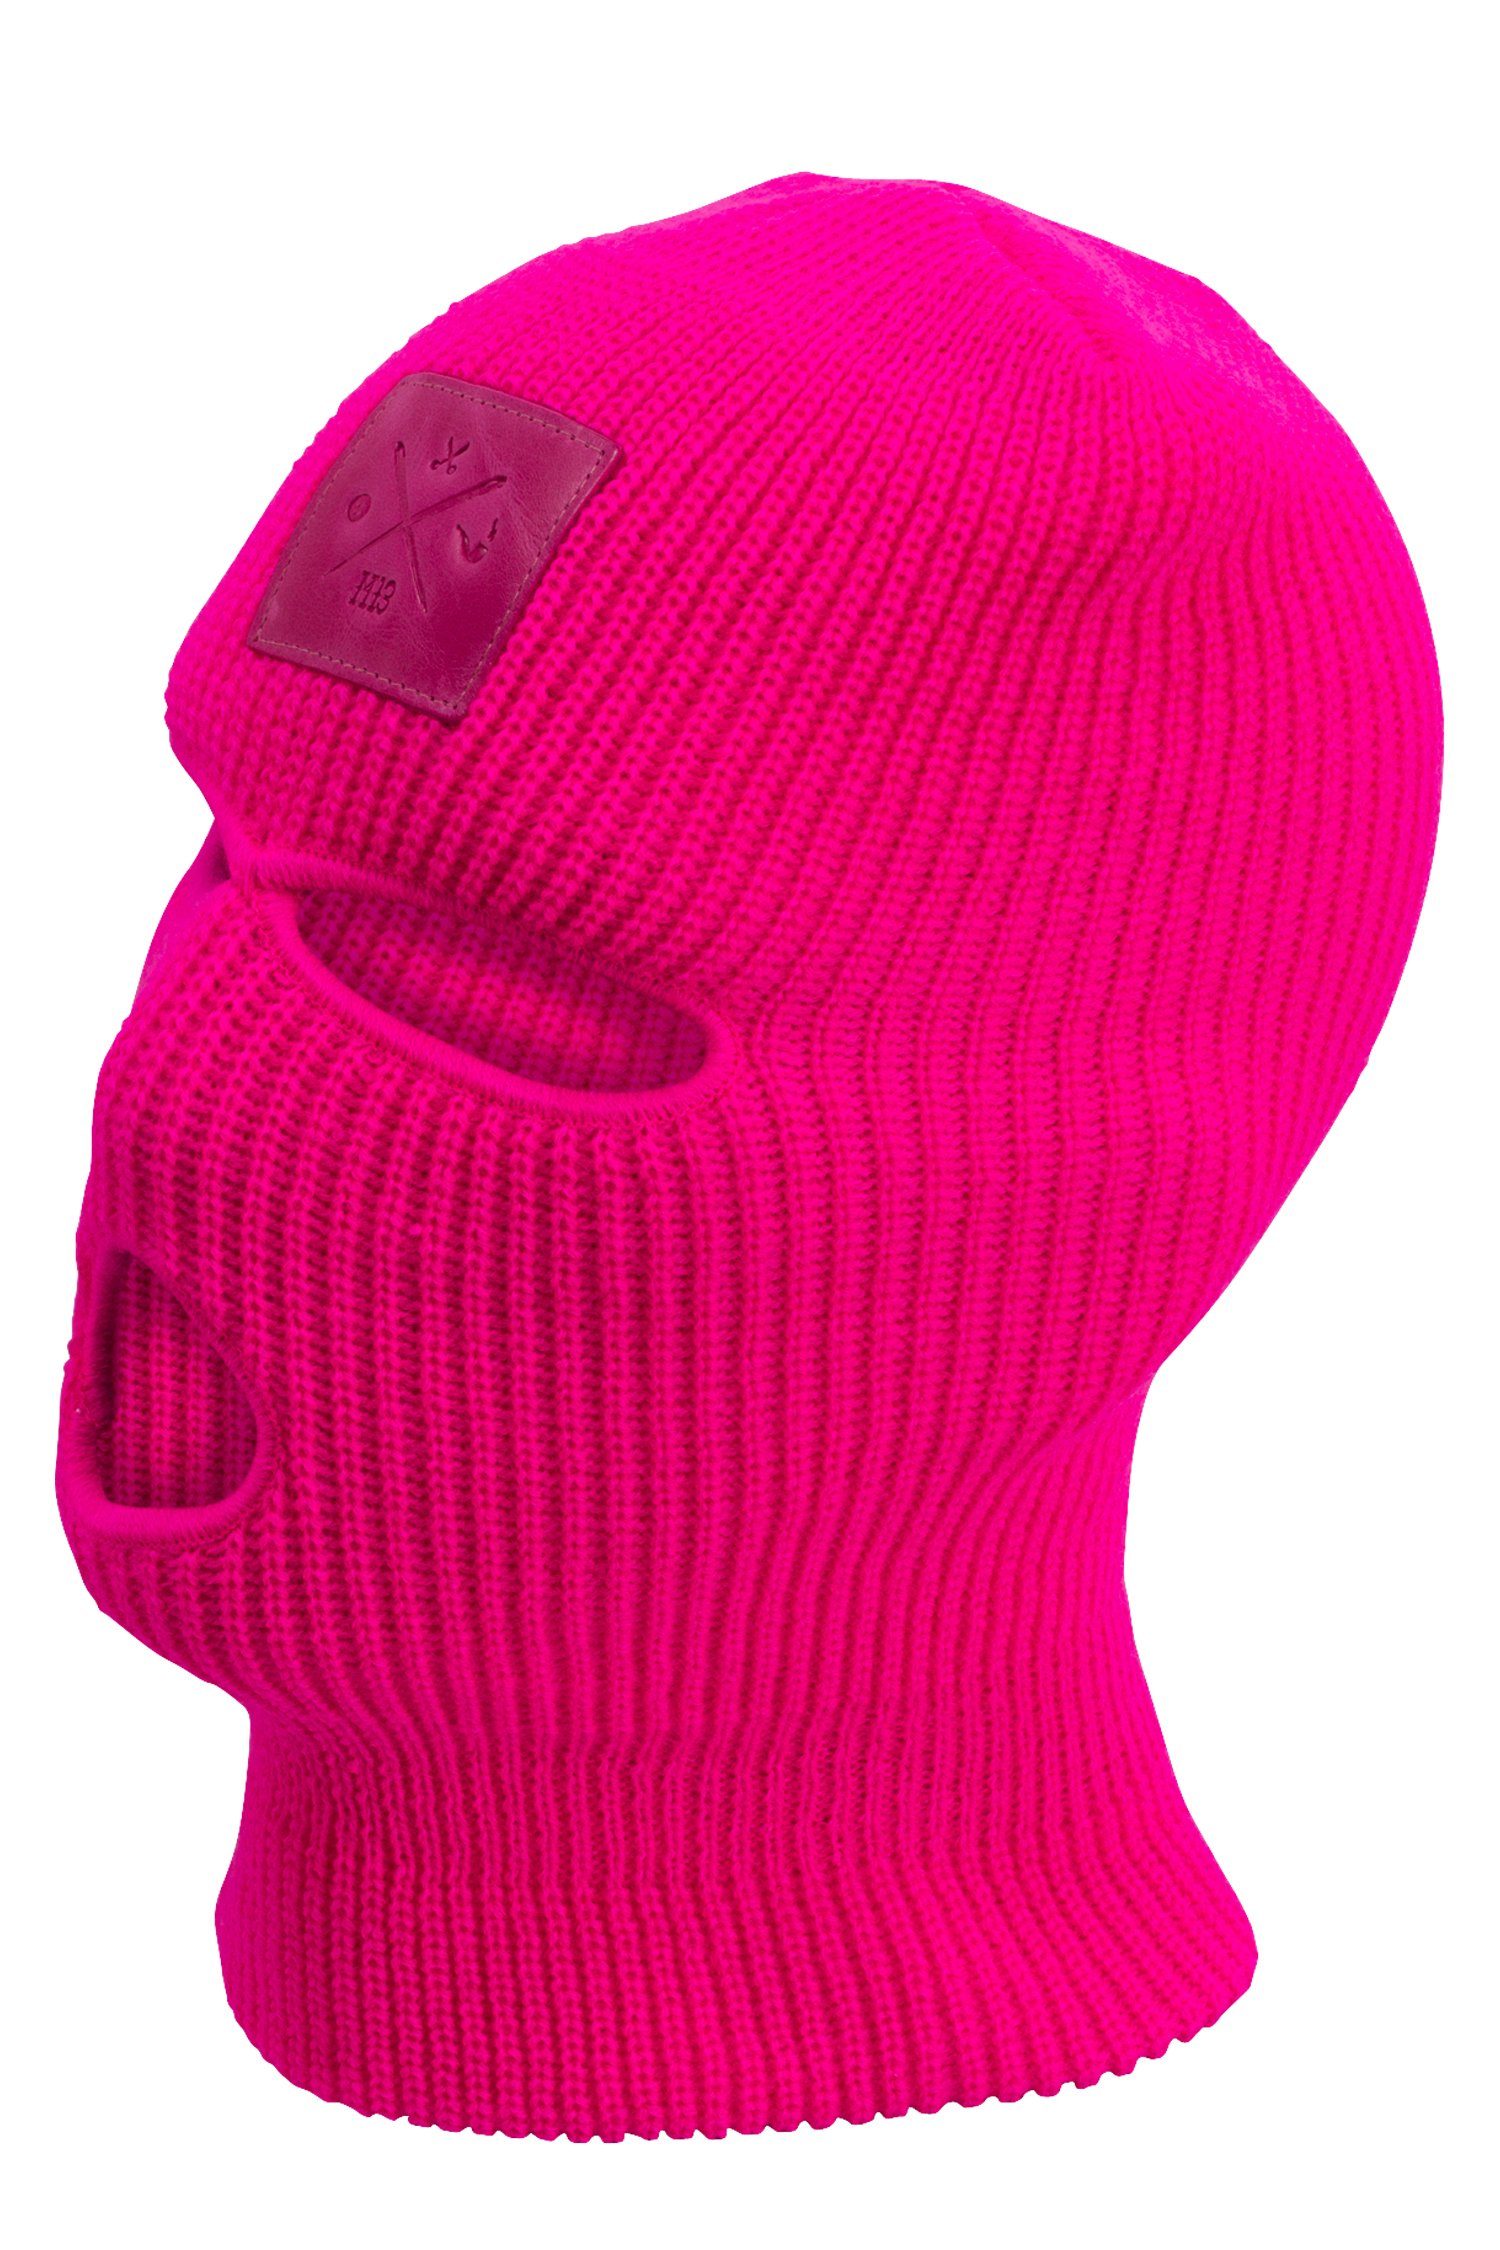 Farben Balaclava Skimaske in Sturmhaube, Pink versch. gestrickt Sturmhaube Manufaktur13 - 3-Loch